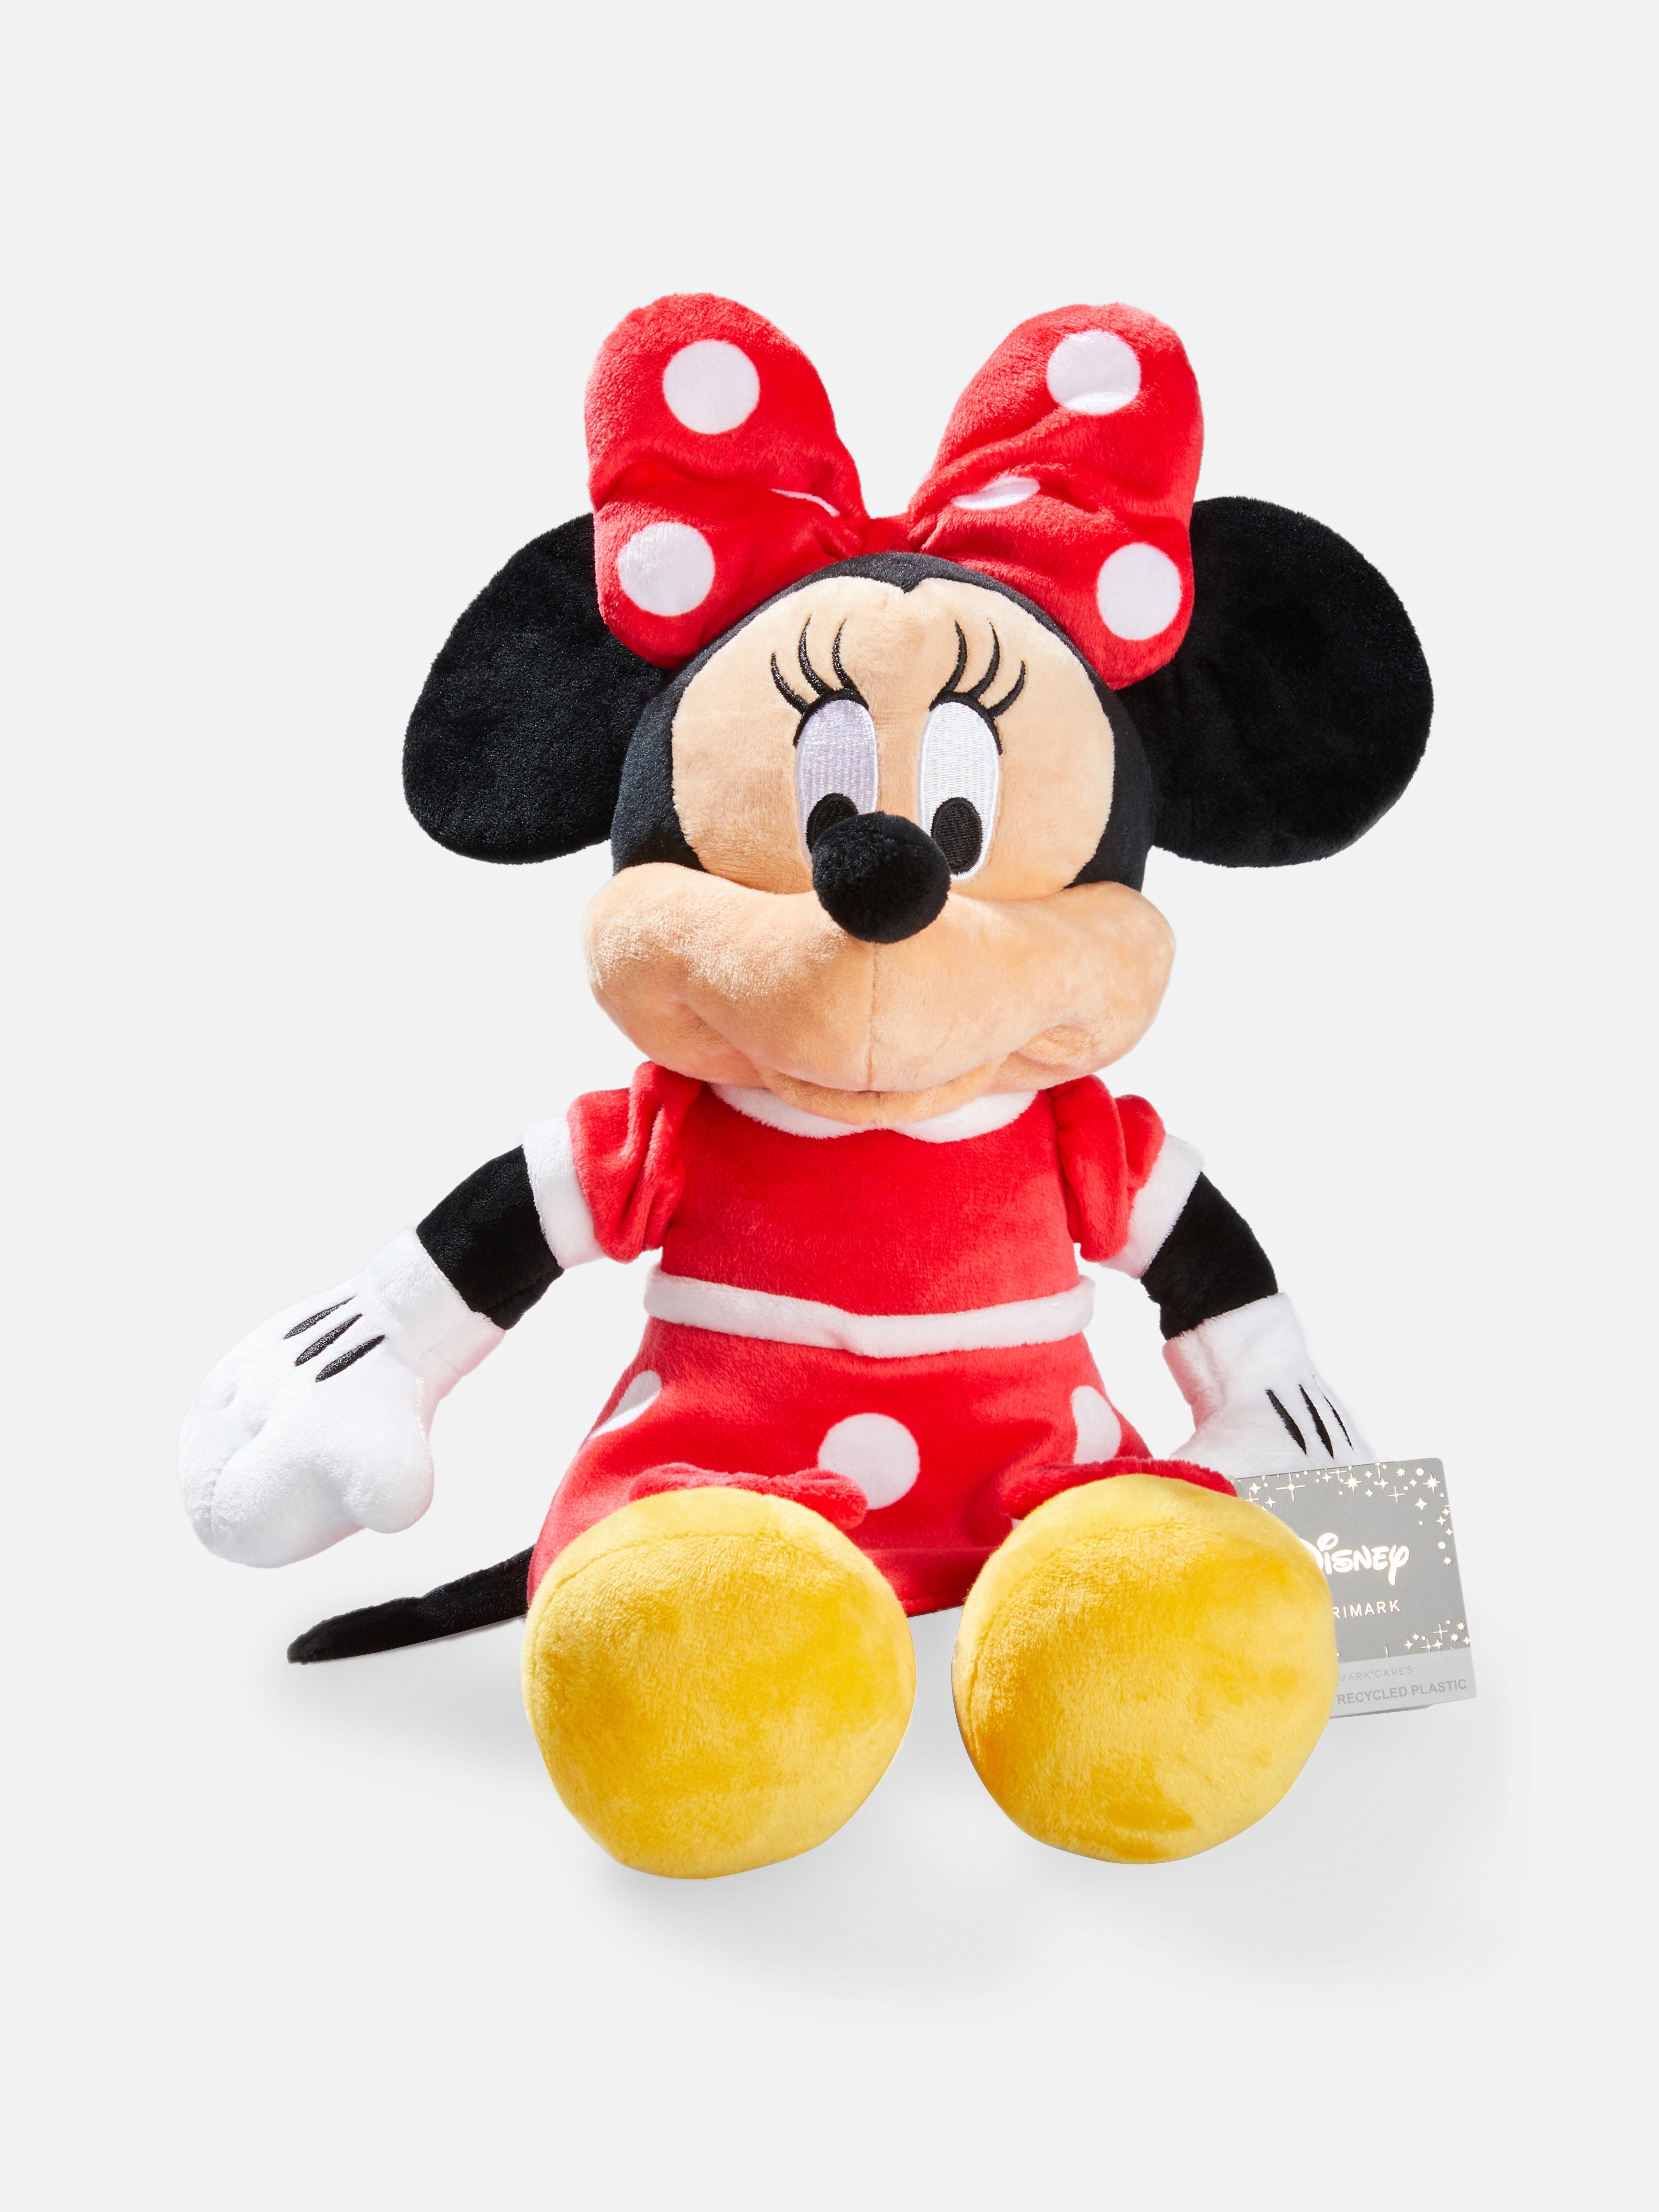 Disney's Minnie Mouse Plush Toy